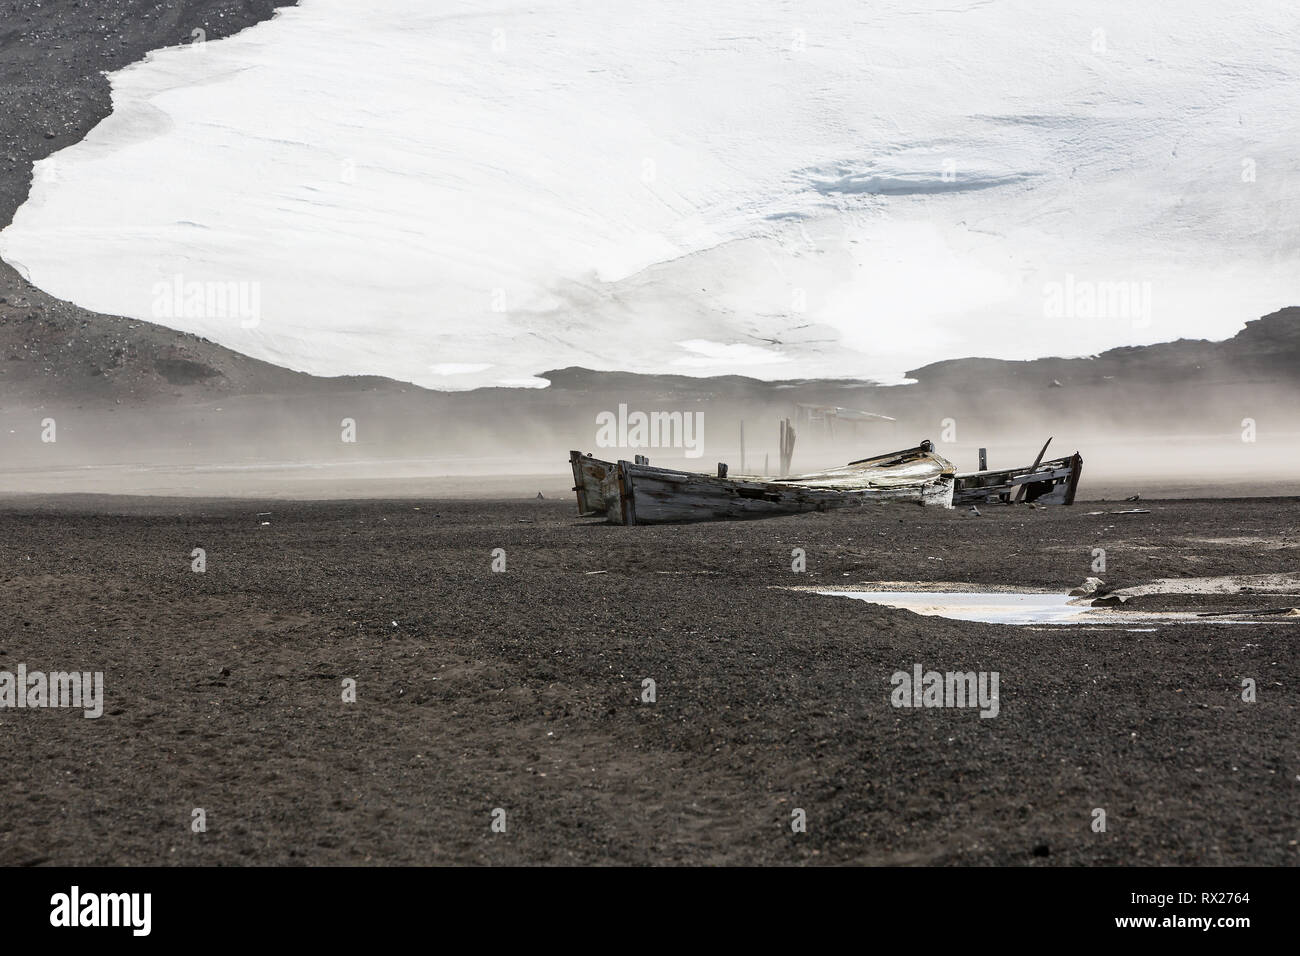 Reliquias del pasado, incluyendo estos barcos de agua utilizados en la industria ballenera, se encuentran esparcidos por la playa en la Bahía de Whaler en la Isla decepción, Islas Shetland del Sur, Antártida. Foto de stock